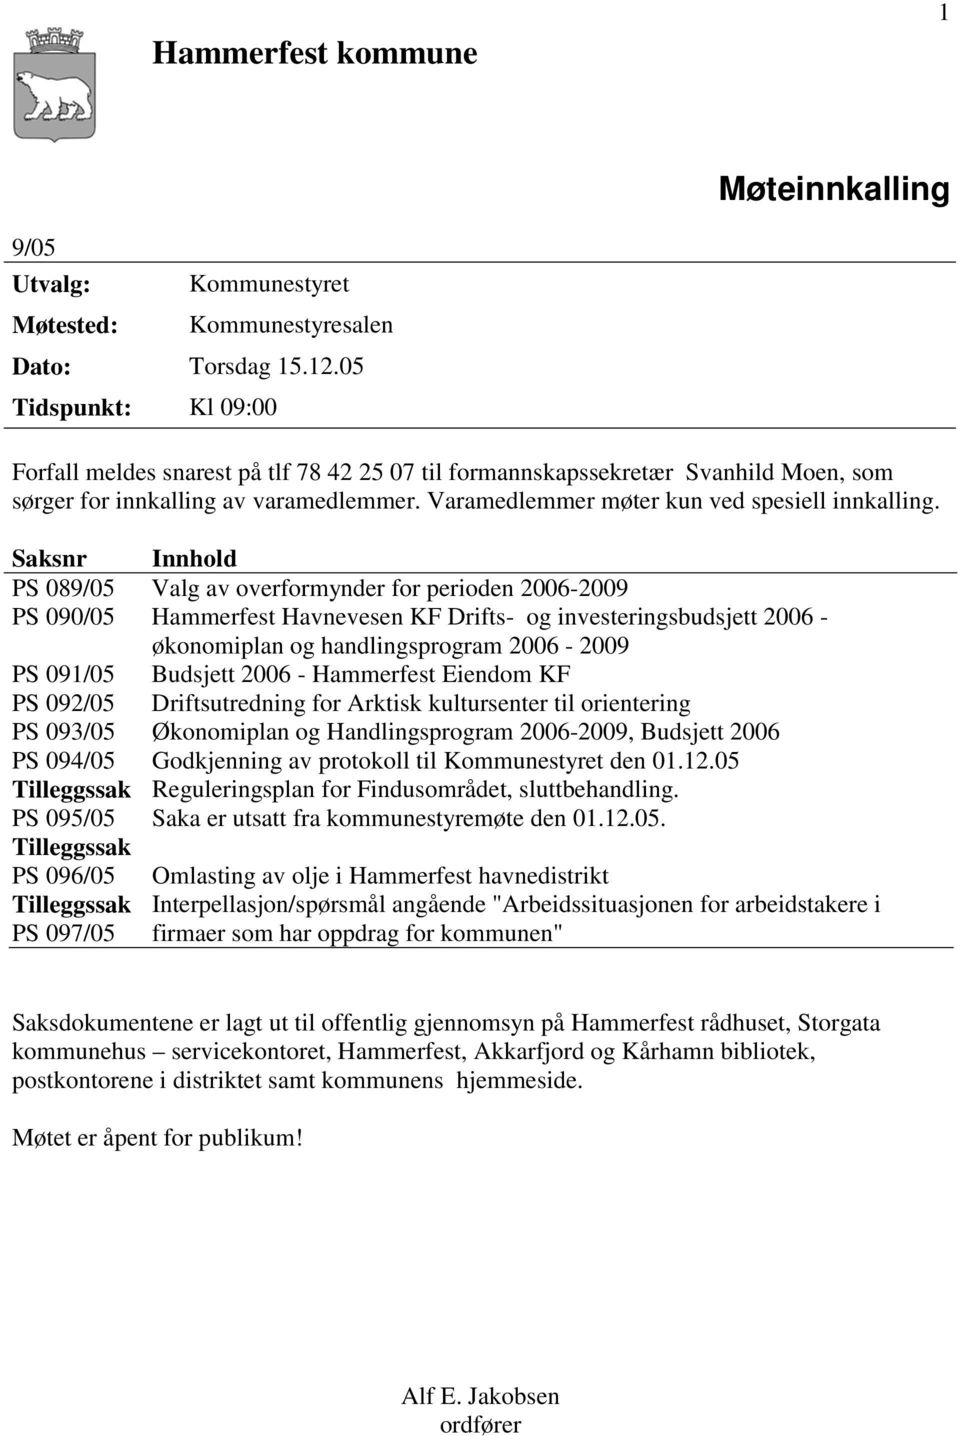 Saksnr Innhold PS 089/05 Valg av overformynder for perioden 2006-2009 PS 090/05 Hammerfest Havnevesen KF Drifts- og investeringsbudsjett 2006 - økonomiplan og handlingsprogram 2006-2009 PS 091/05